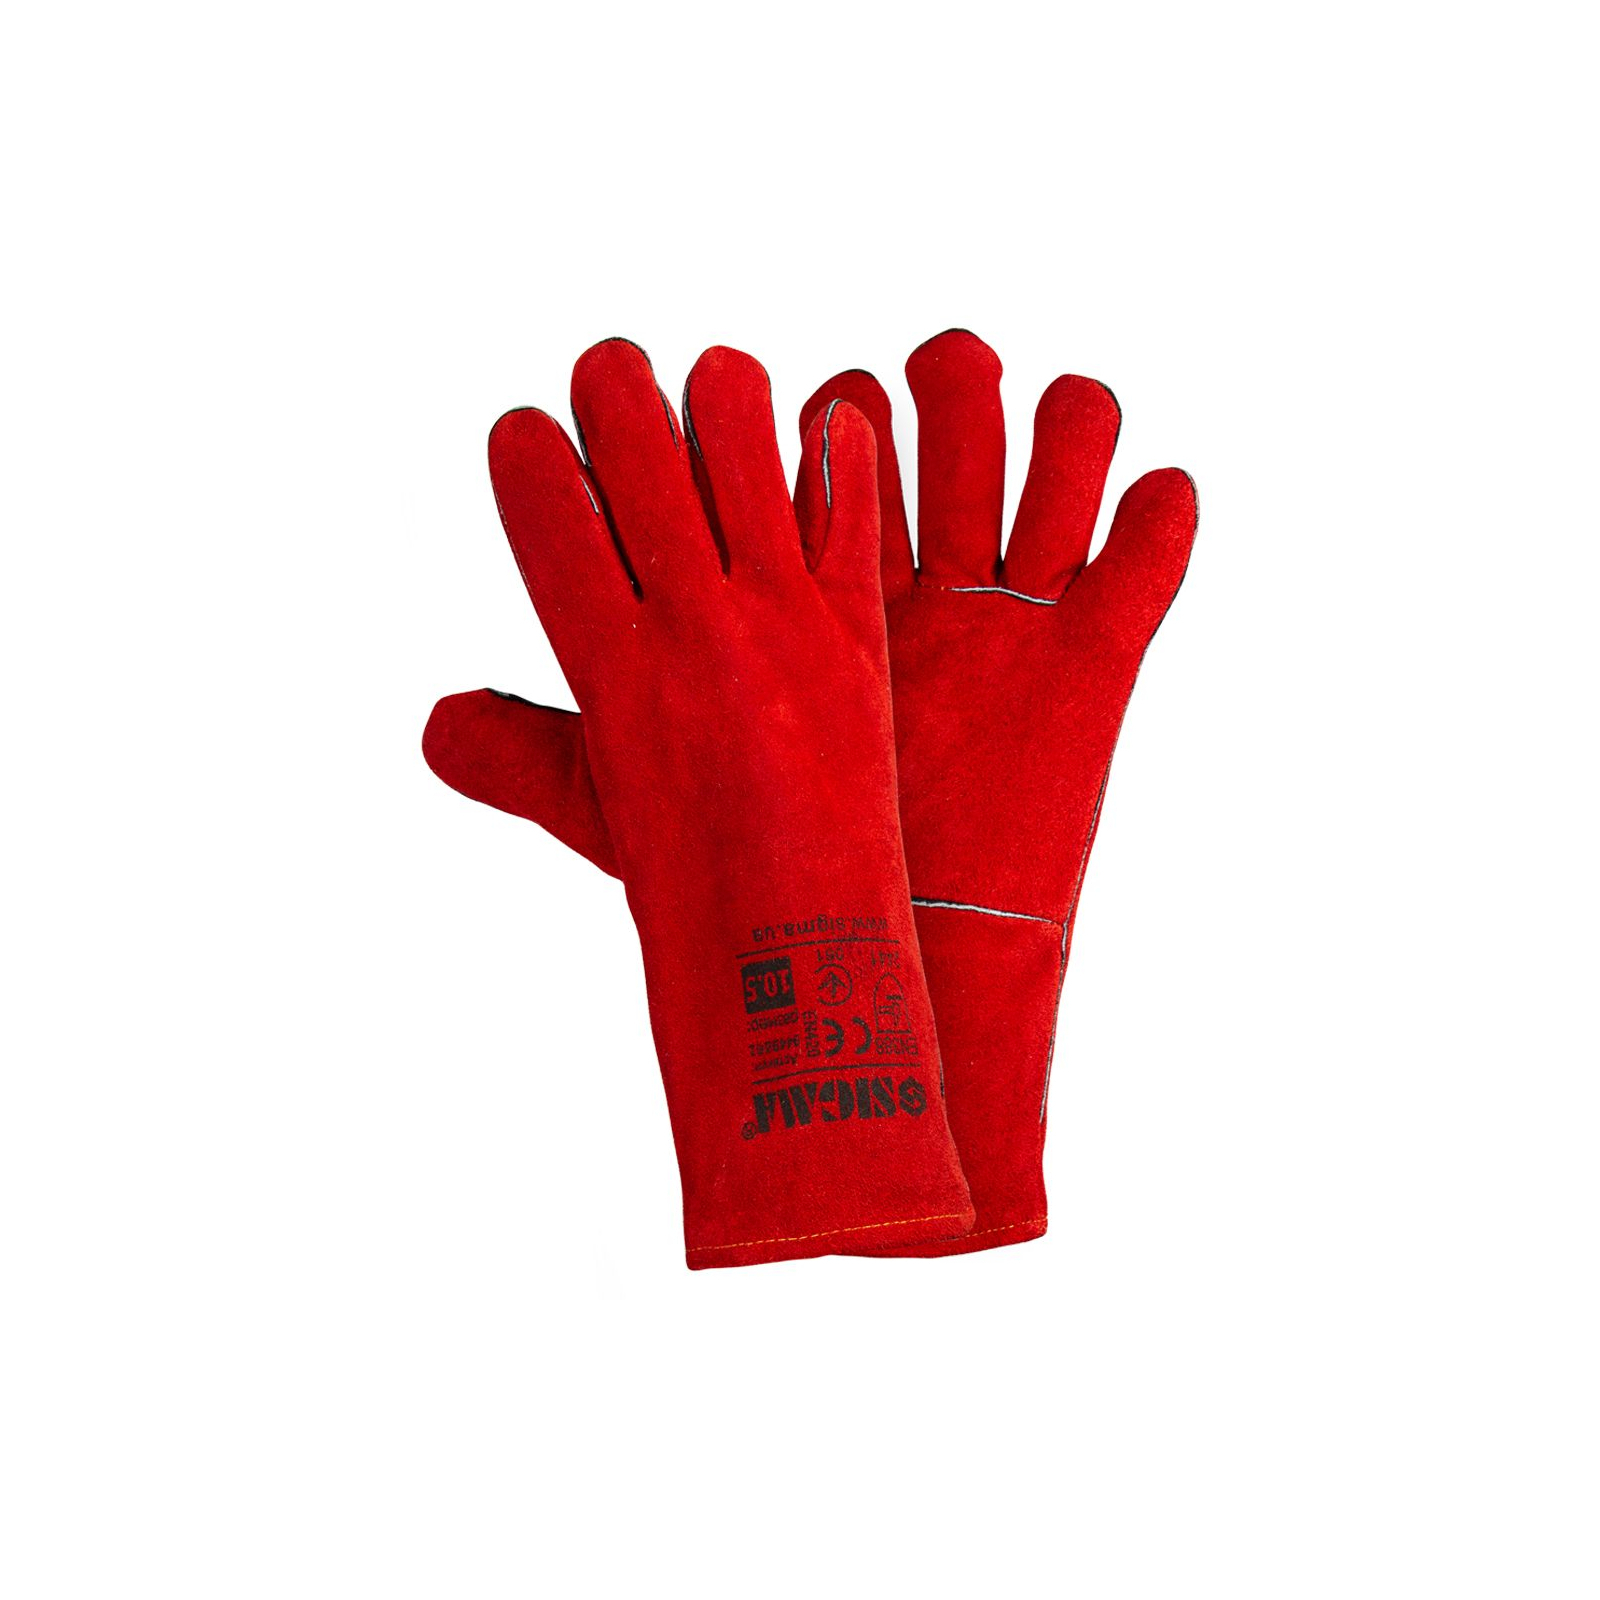 Захисні рукавиці Sigma краги зварювальника р10.5, клас НД, довжина 35см (червоні) (9449361)